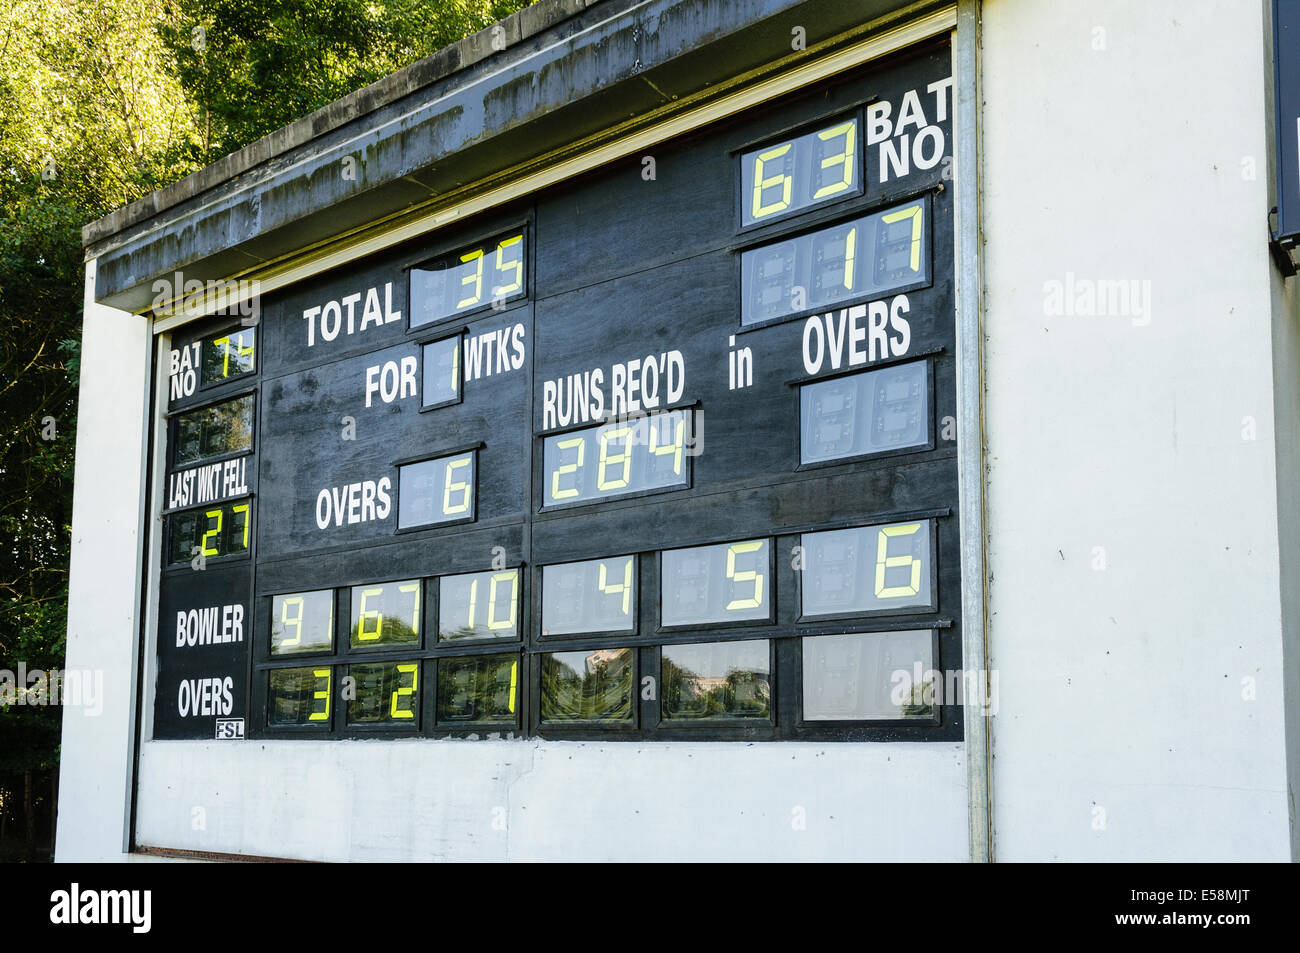 Tableau montrant le cricket score actuel et le nombre de rachats Crédit : Stephen Barnes/Alamy Live News Banque D'Images